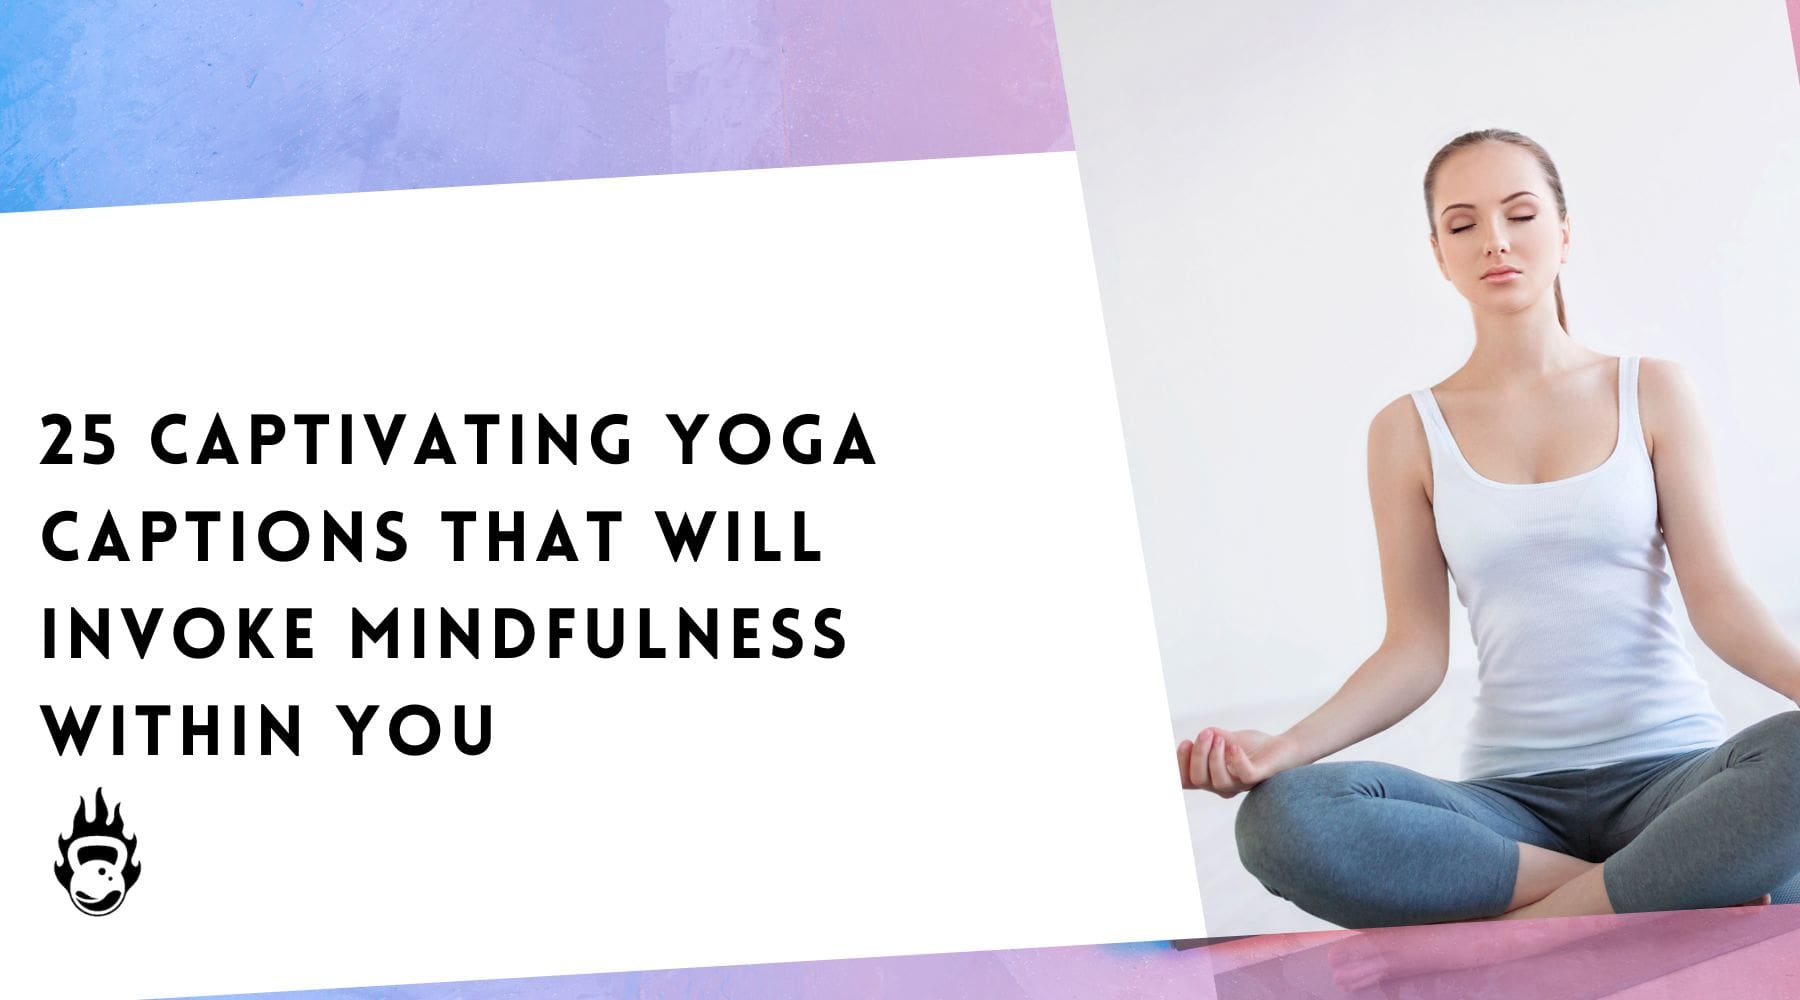 25 Captivating Yoga Captions That Will Invoke Mindfulness Within You